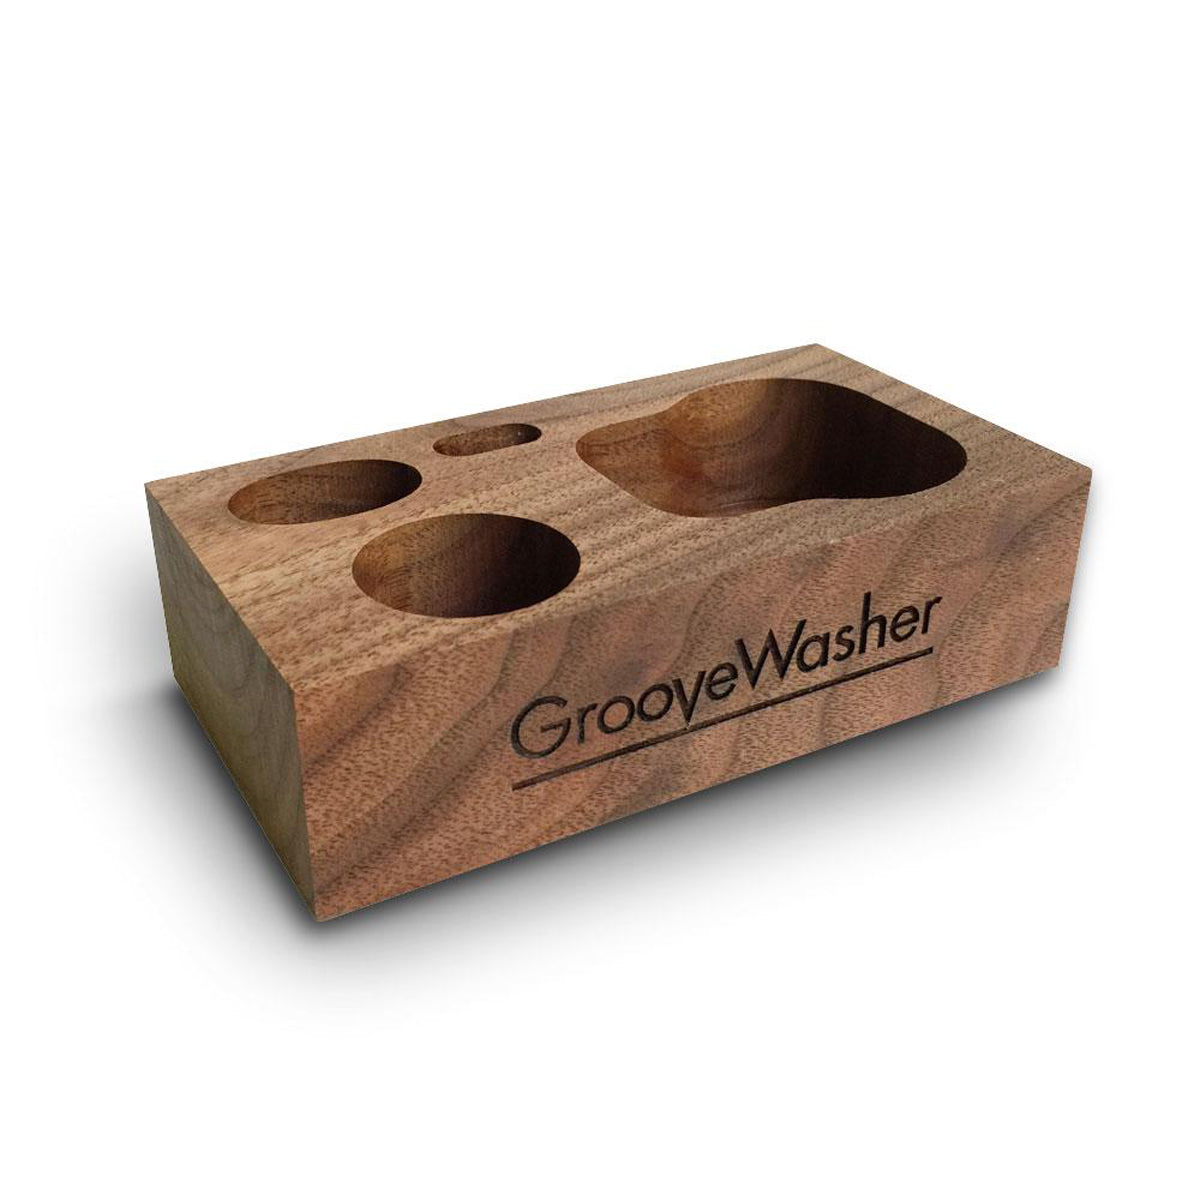 Groovewasher Walnut Display BlockGROOVEWASHER  BLOQUE EXPOSITOR DE NOGAL  + FRASCO DE LÍQUIDO G2 DE 2 ONZAS